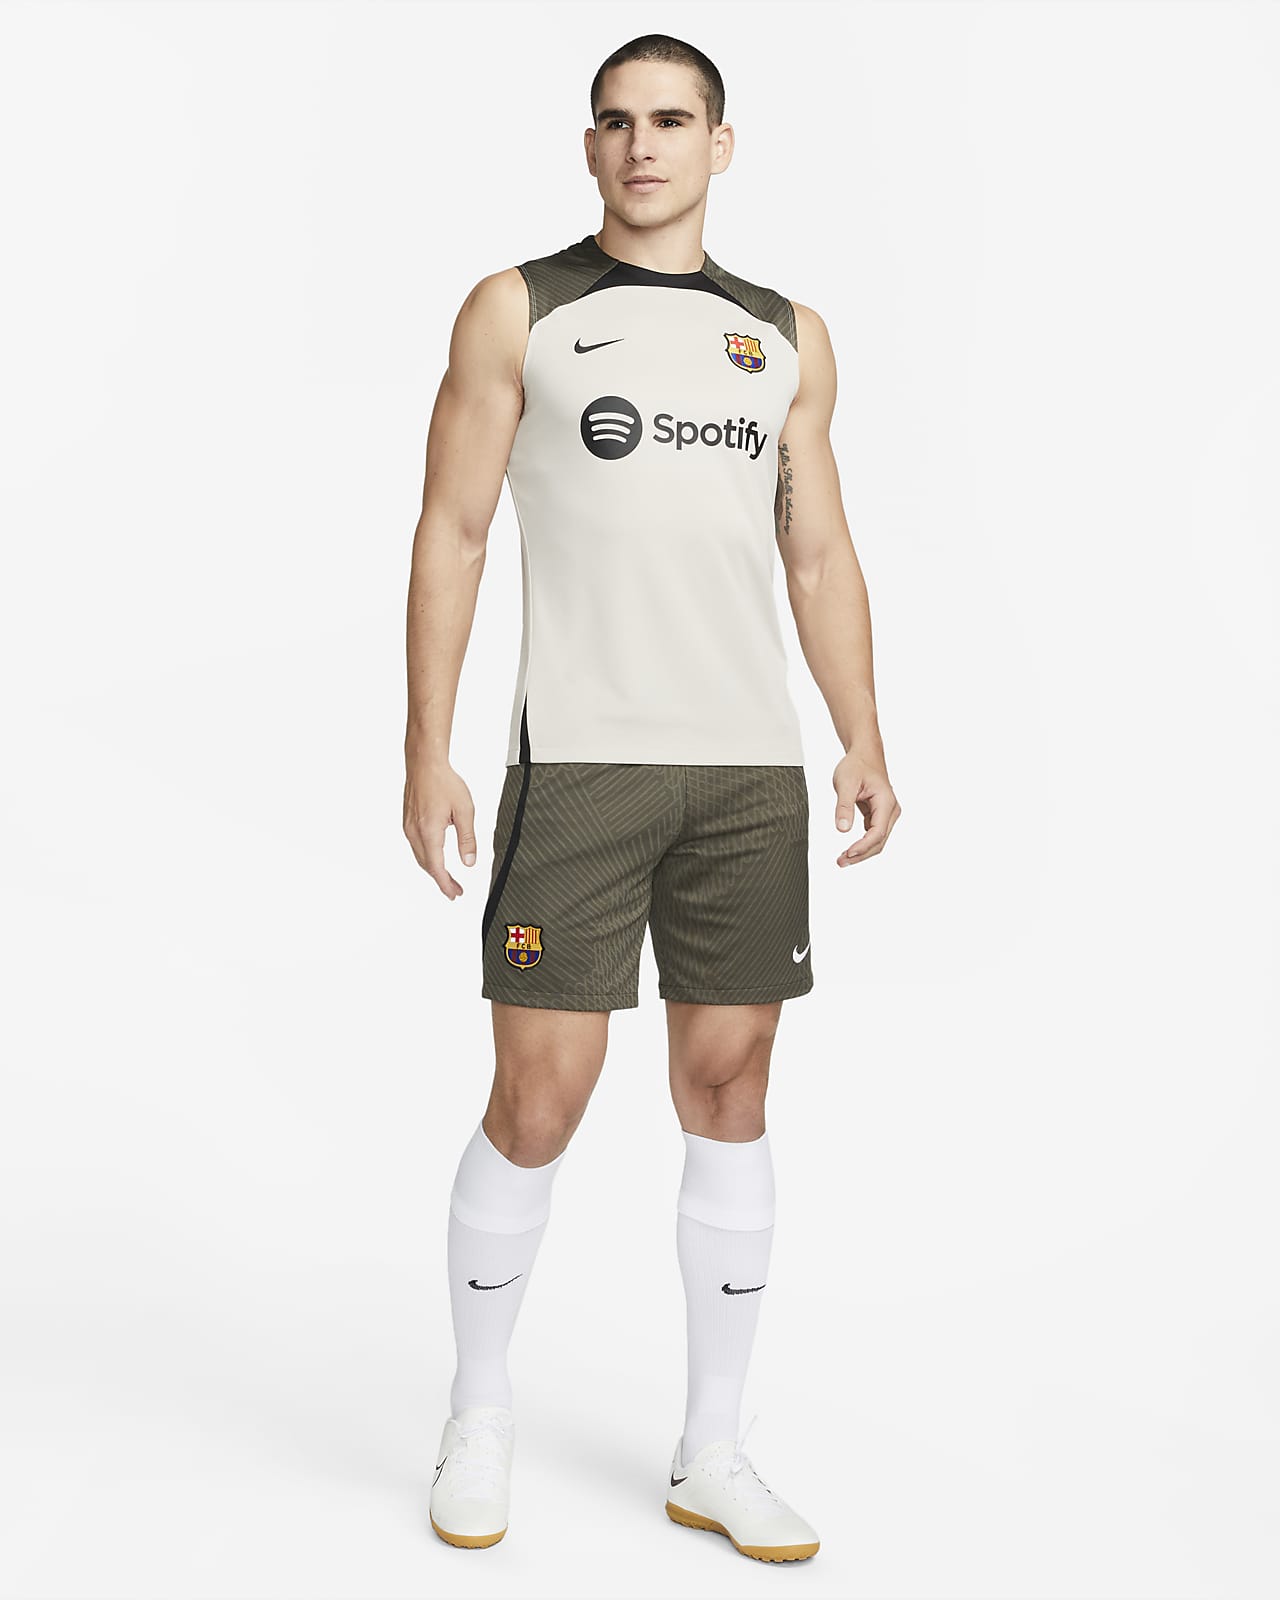 Custom Sleeveless Soccer Training Jerseys, Soccer Tank Tops Design